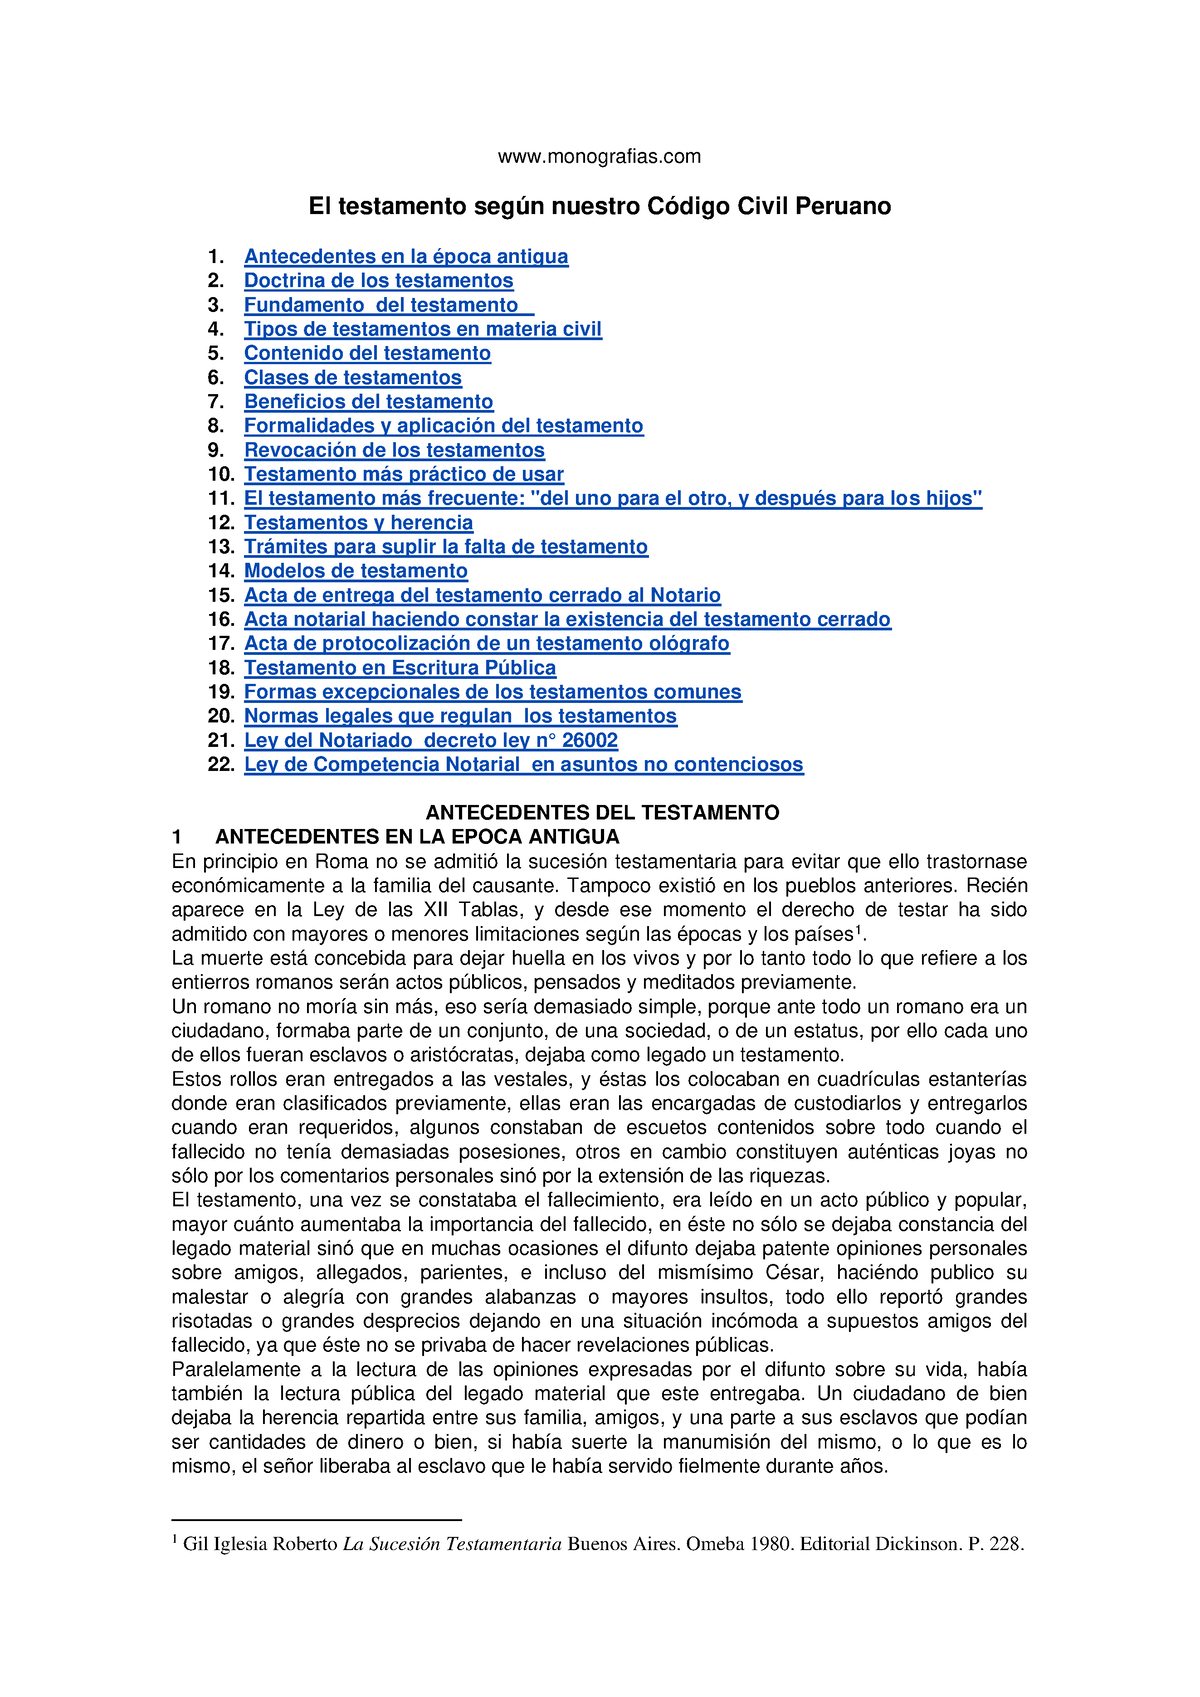 2do. Control de Lectura. El Testamento en el Perú - monografias El  testamento según nuestro Código - Studocu